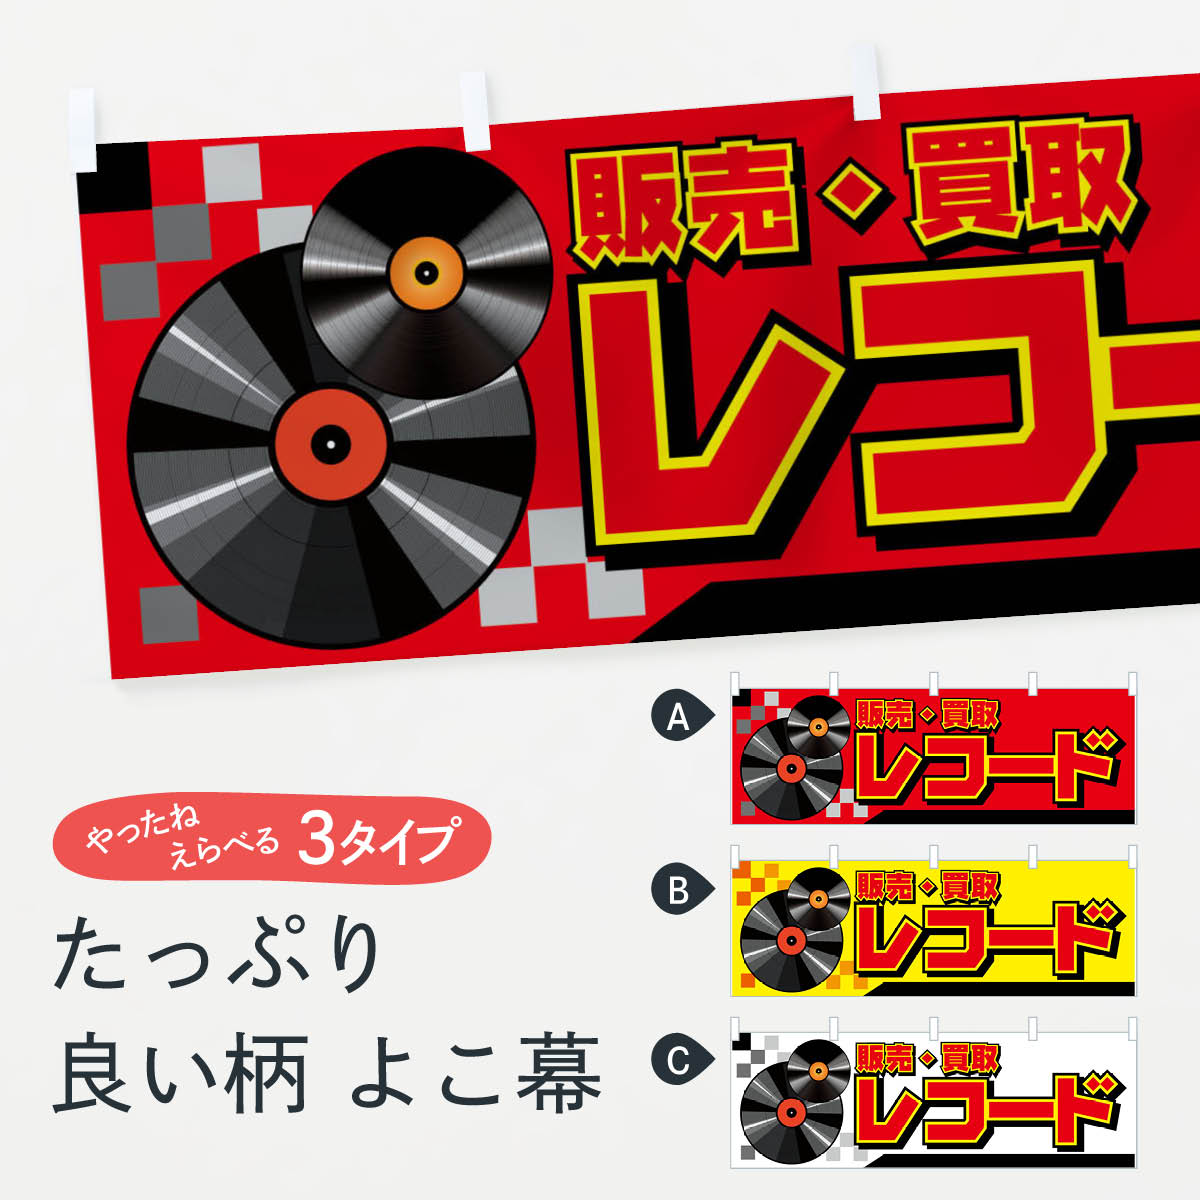 【ネコポス送料360】 横幕 レコード販売買取 7AT0 中古CD・DVD